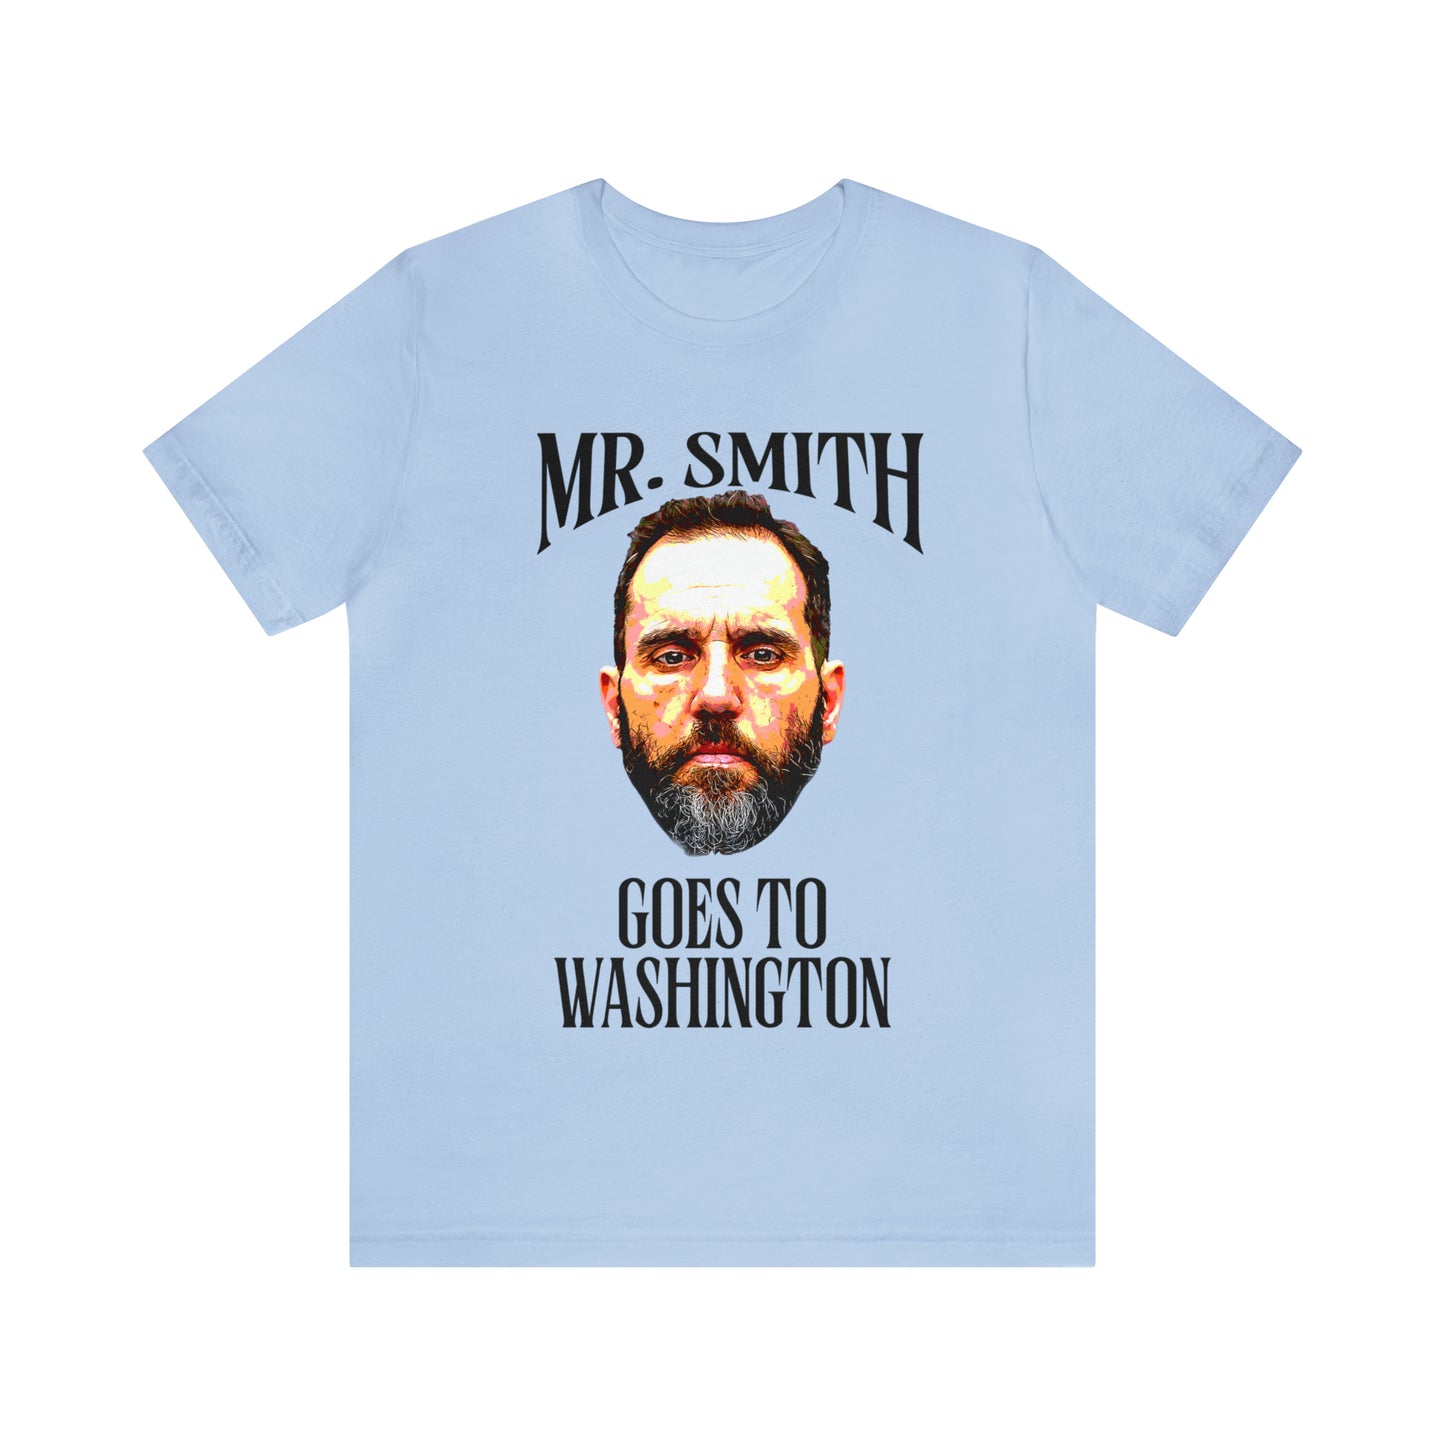 MR. SMITH GOES TO WASHINGTON - Unisex Short Sleeve Tee